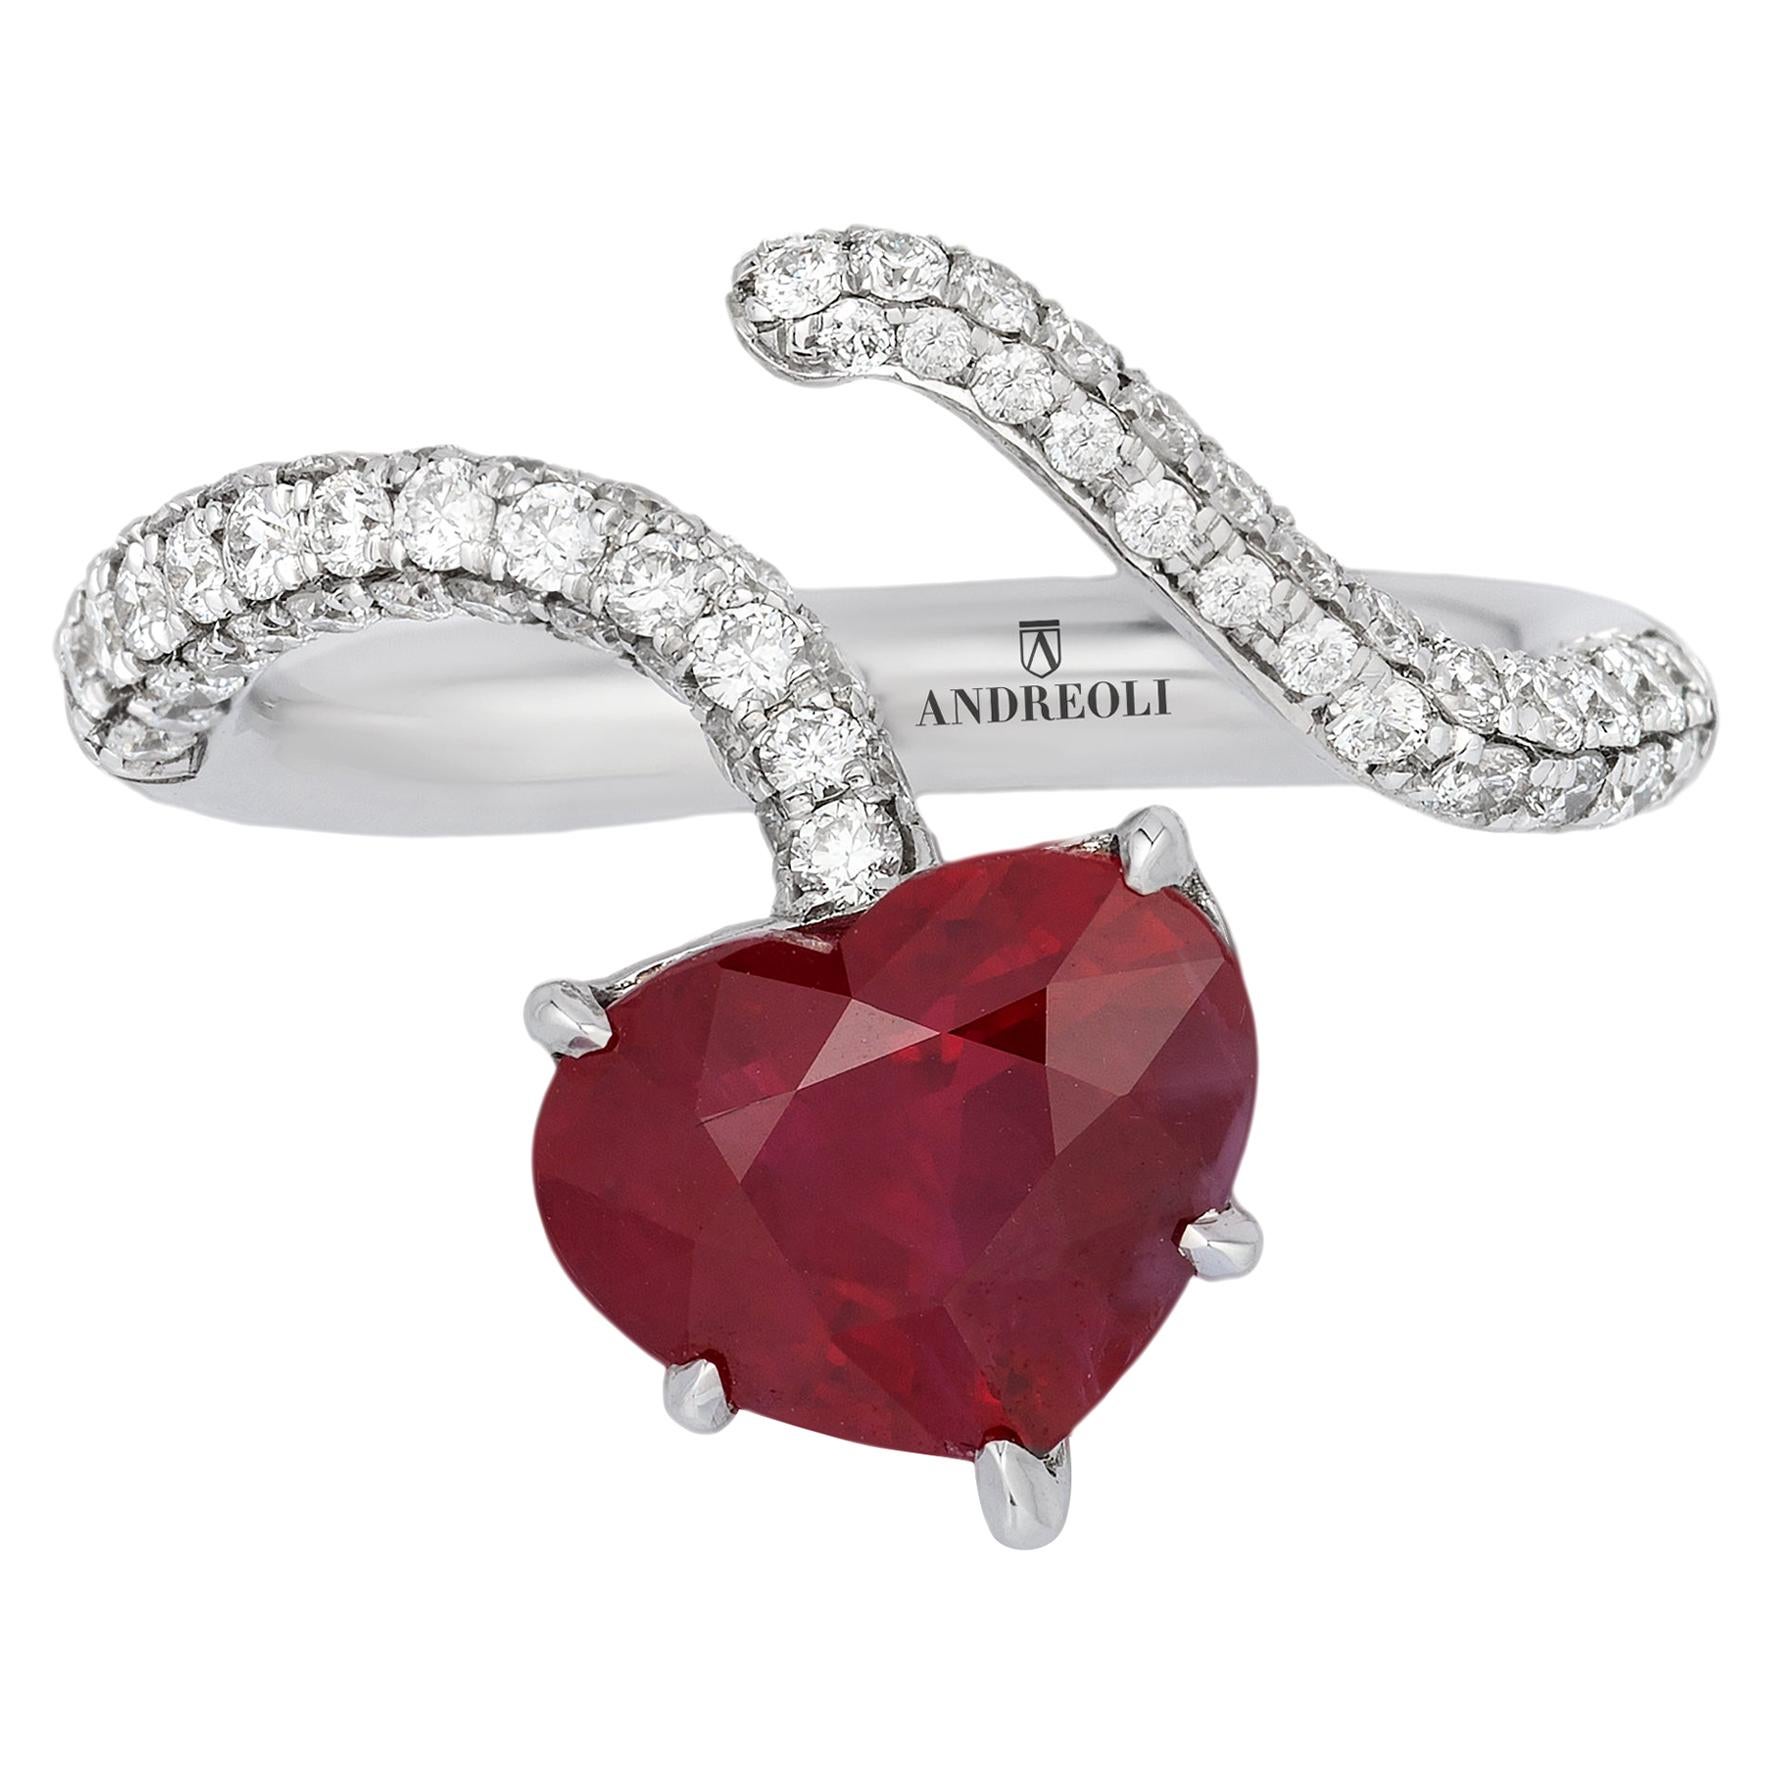 Andreoli Bague en or 18 carats avec diamants et rubis de Birmanie certifié de 4,02 carats en forme de cœur